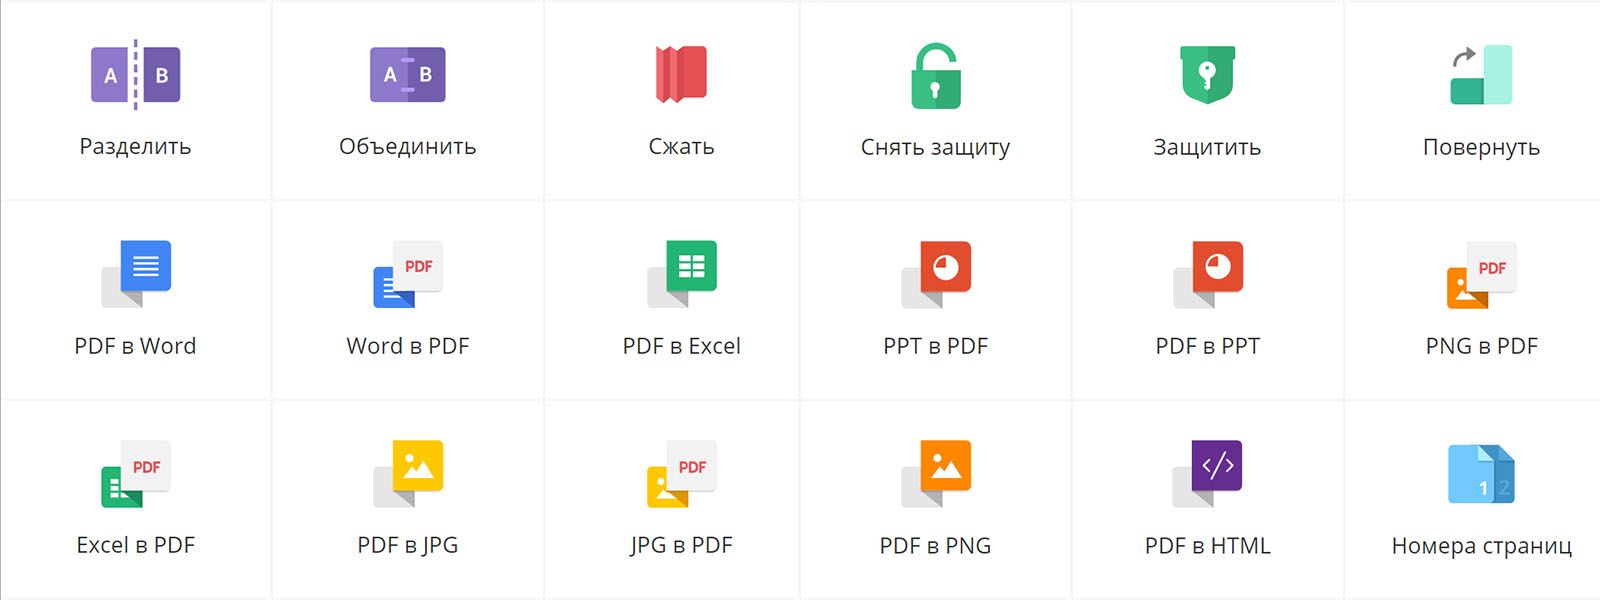 Инструменты для работы с PDF онлайн